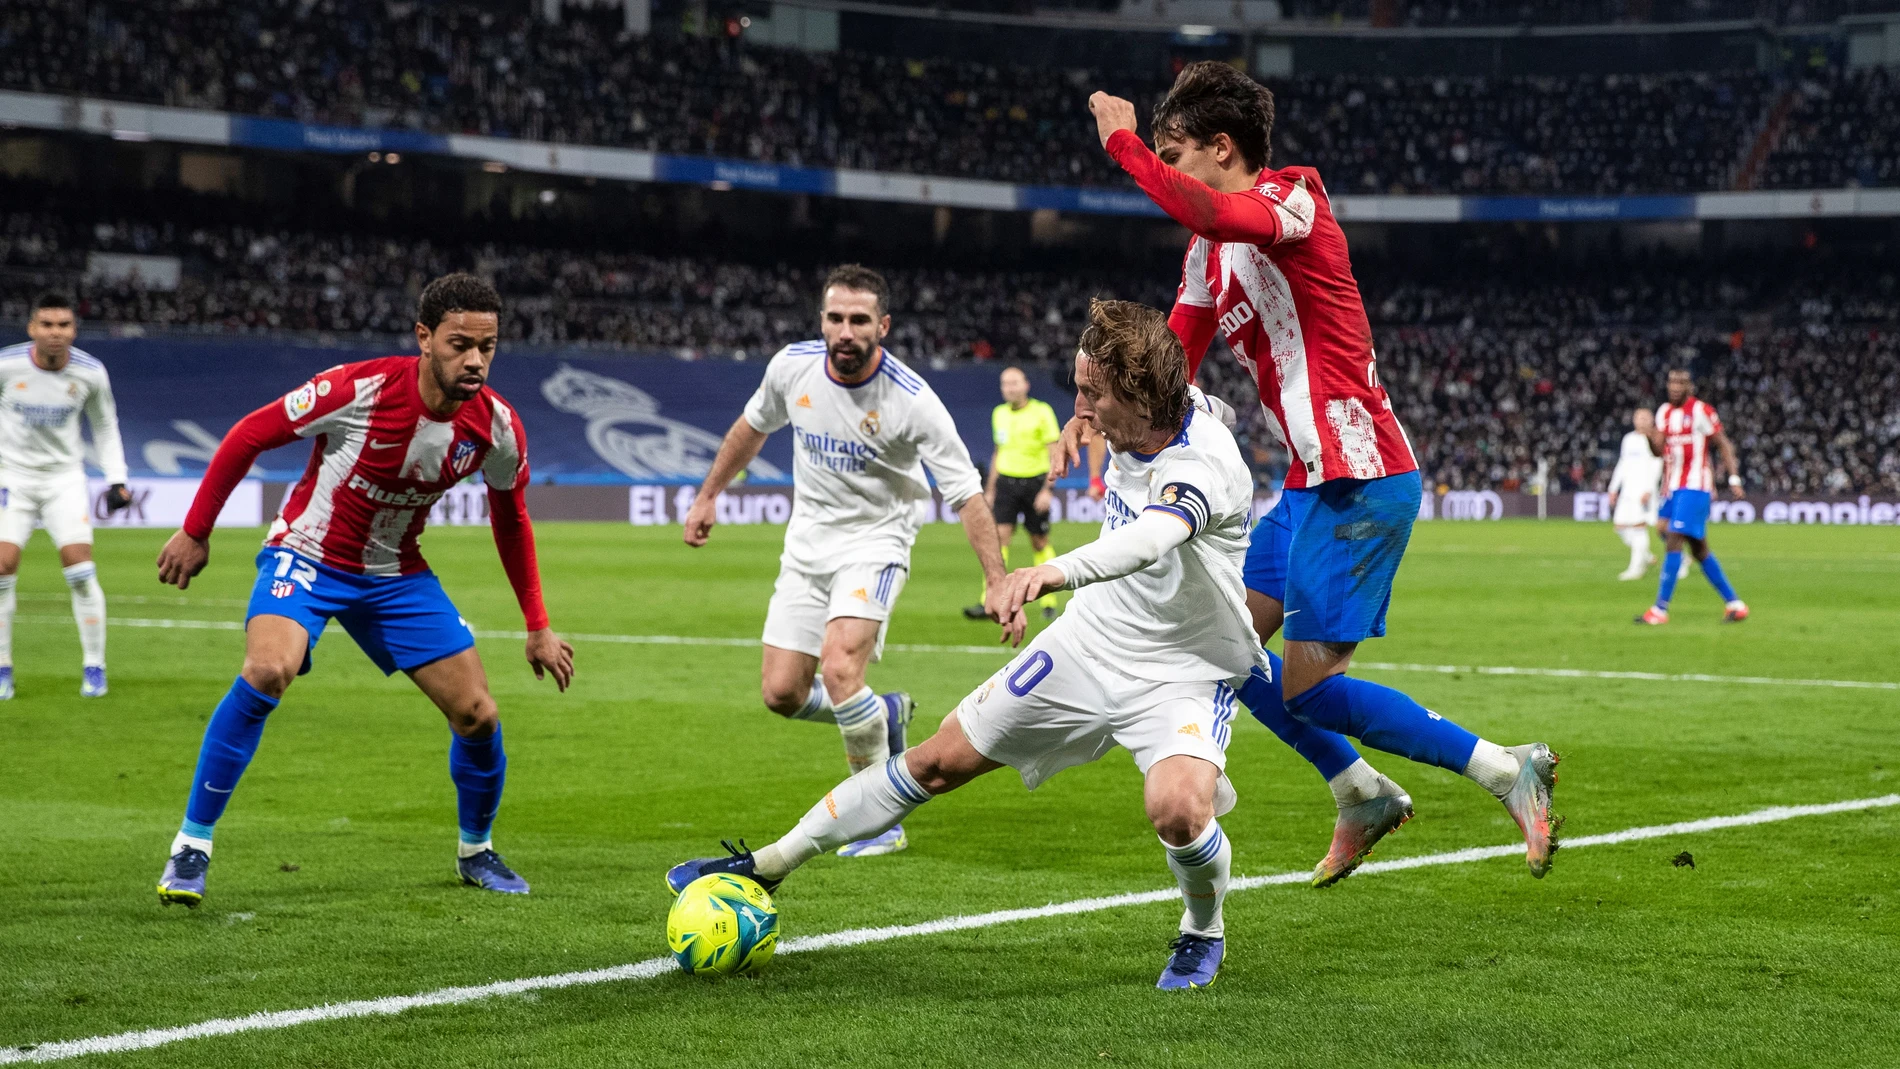 ¿Hará el Atlético el pasillo al Real Madrid en el Wanda Metropolitano?